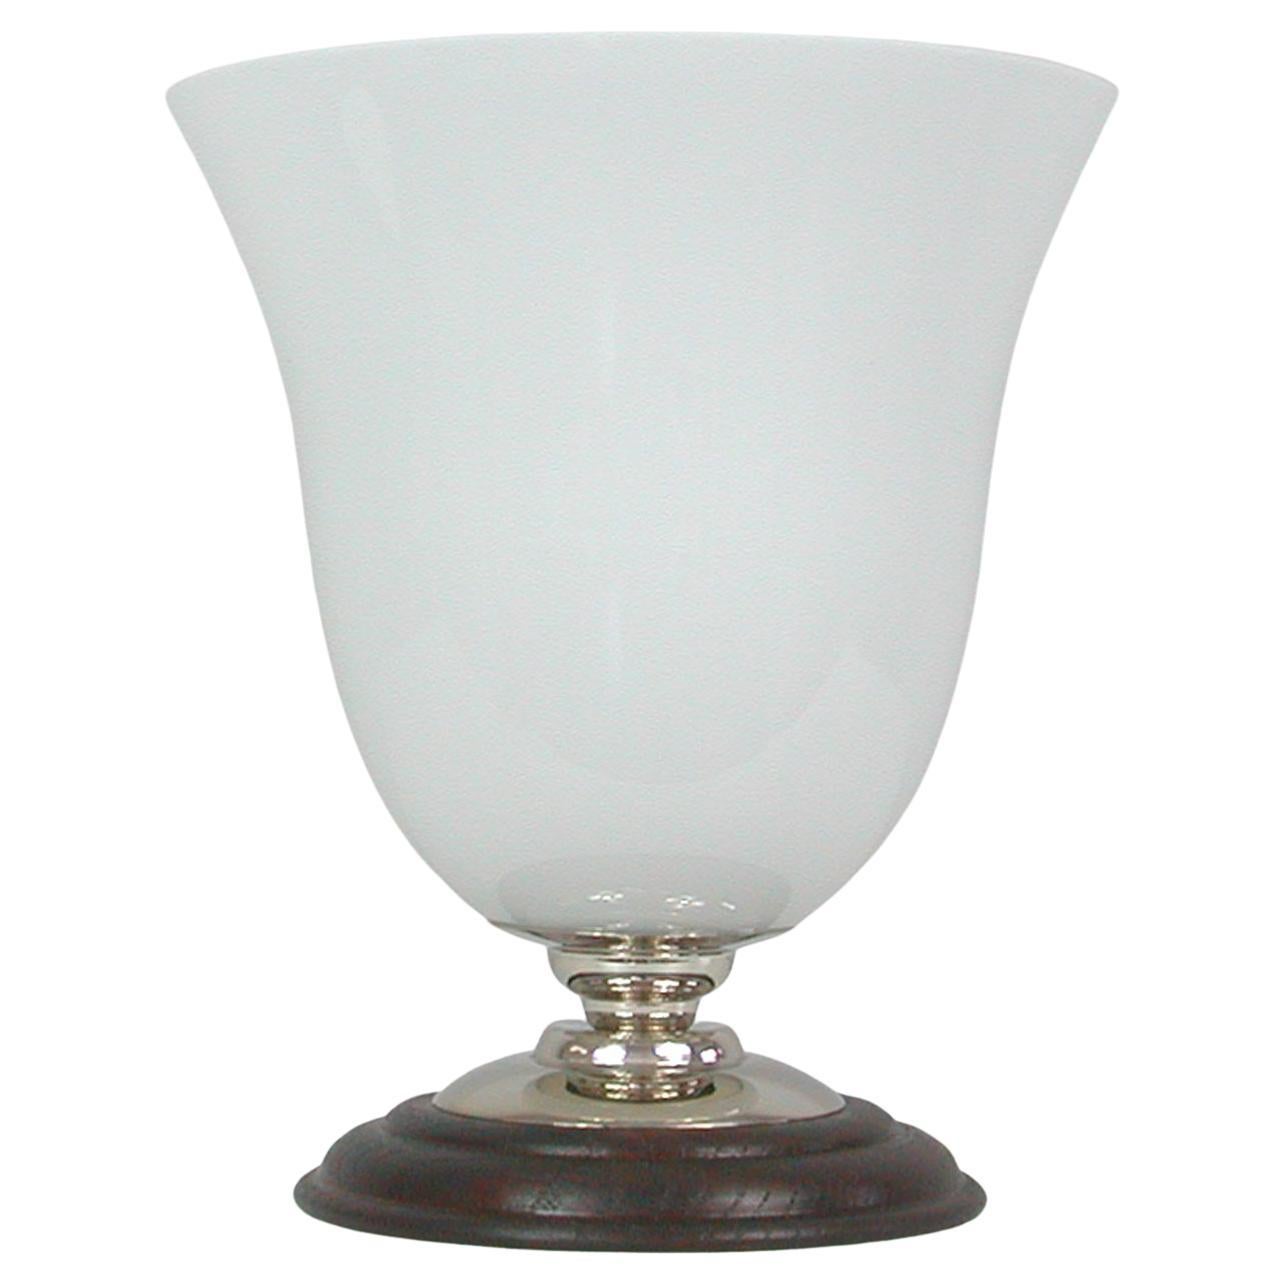 Cette élégante lampe de table Art déco moderniste a été conçue et fabriquée en France dans les années 1940 dans le style des lampes MAZDA. Whiting se compose d'une base en chêne foncé avec des détails en nickel et d'un abat-jour en opaline blanche